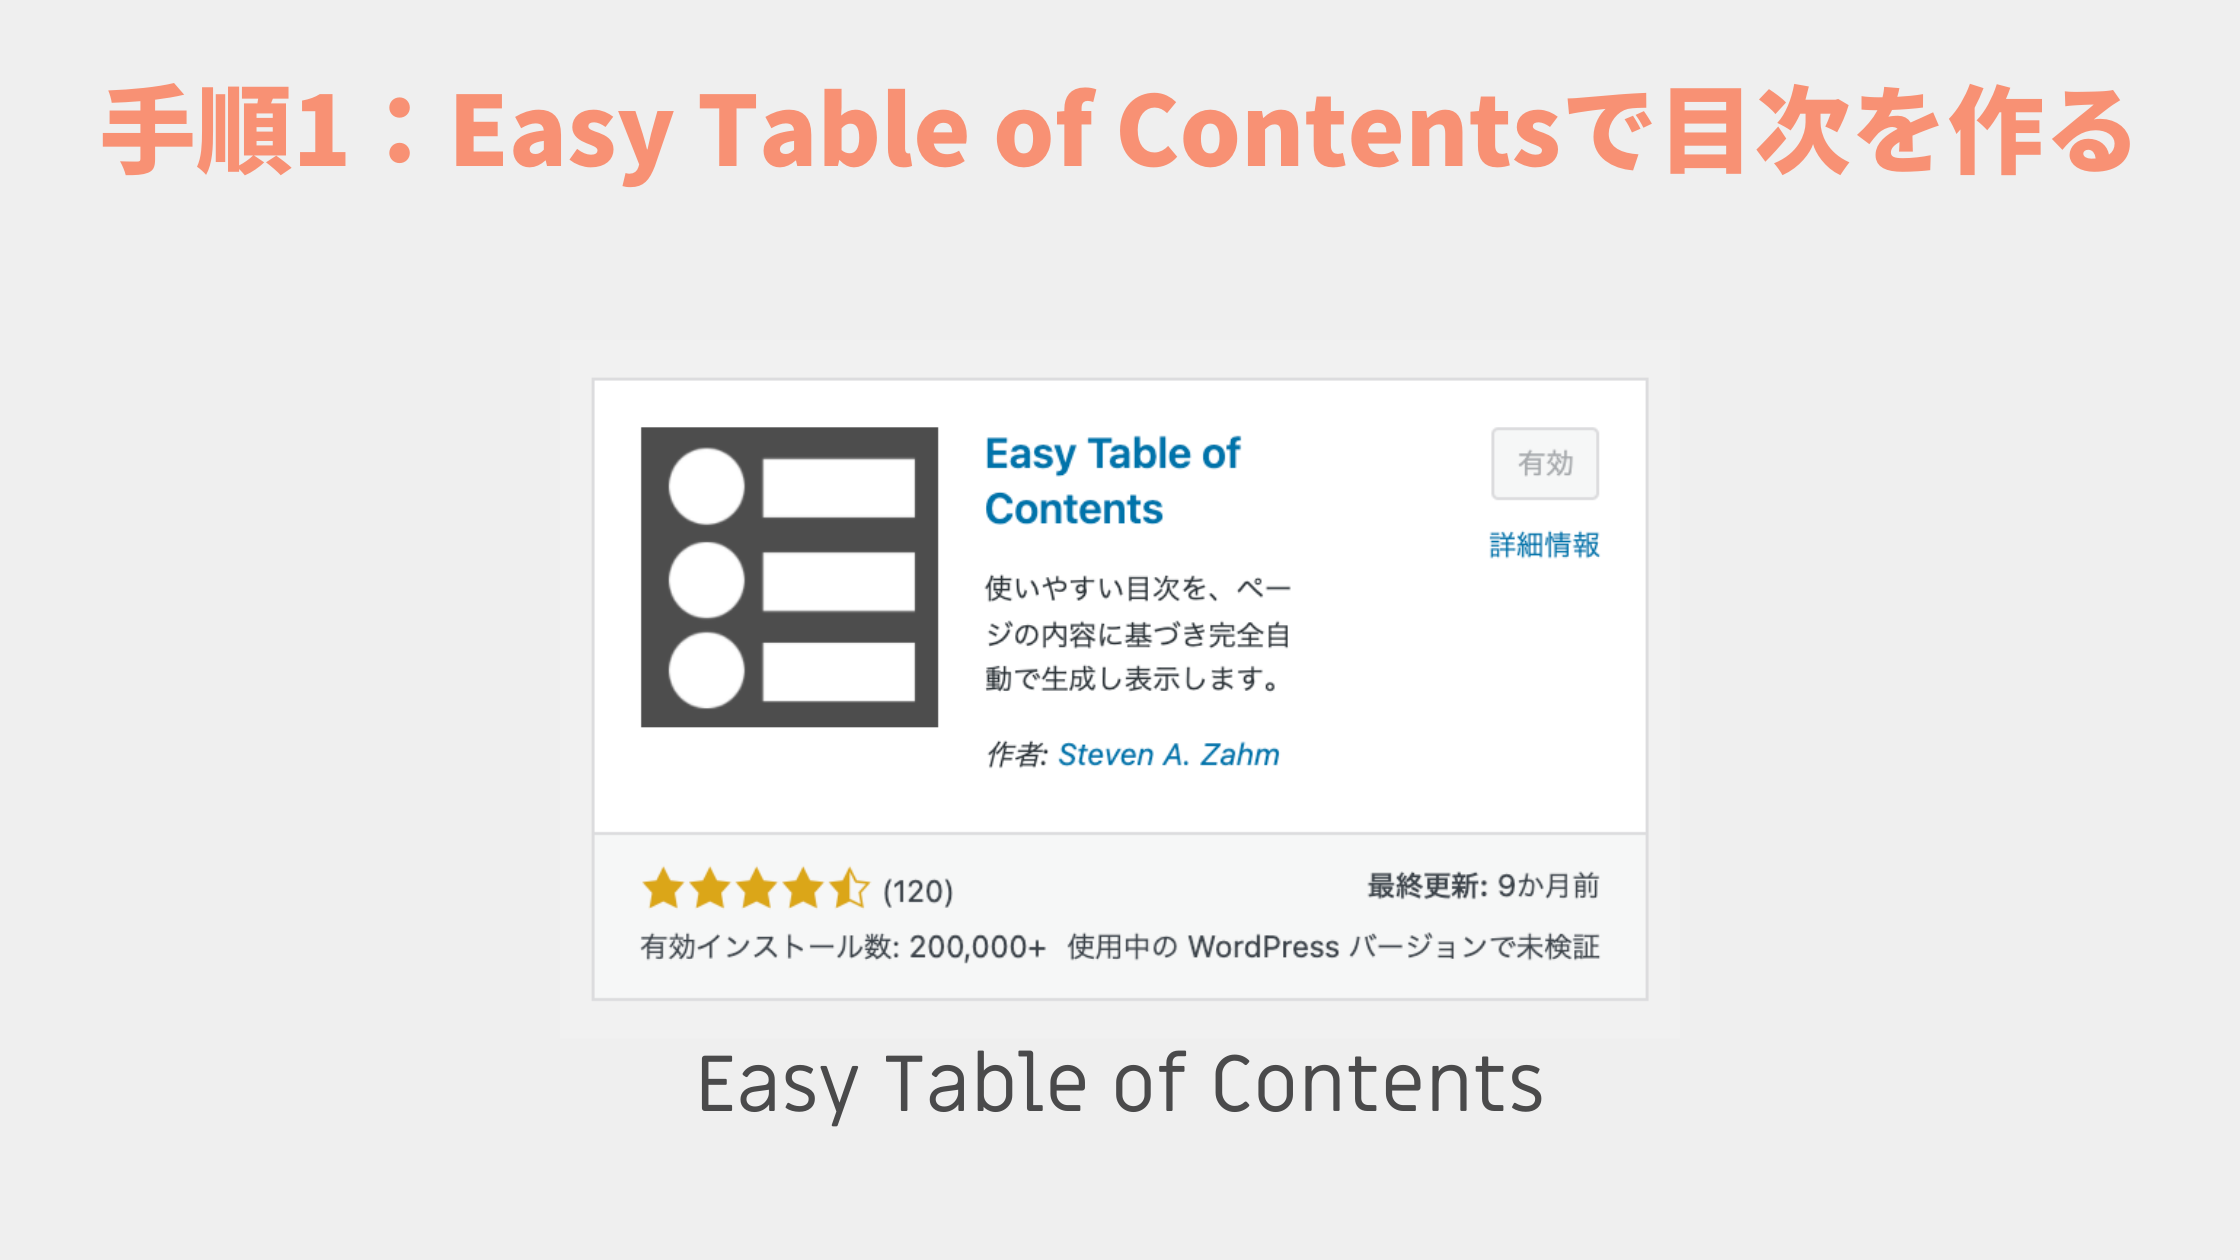 プラグイン「Easy Table of Contents」で目次を作る